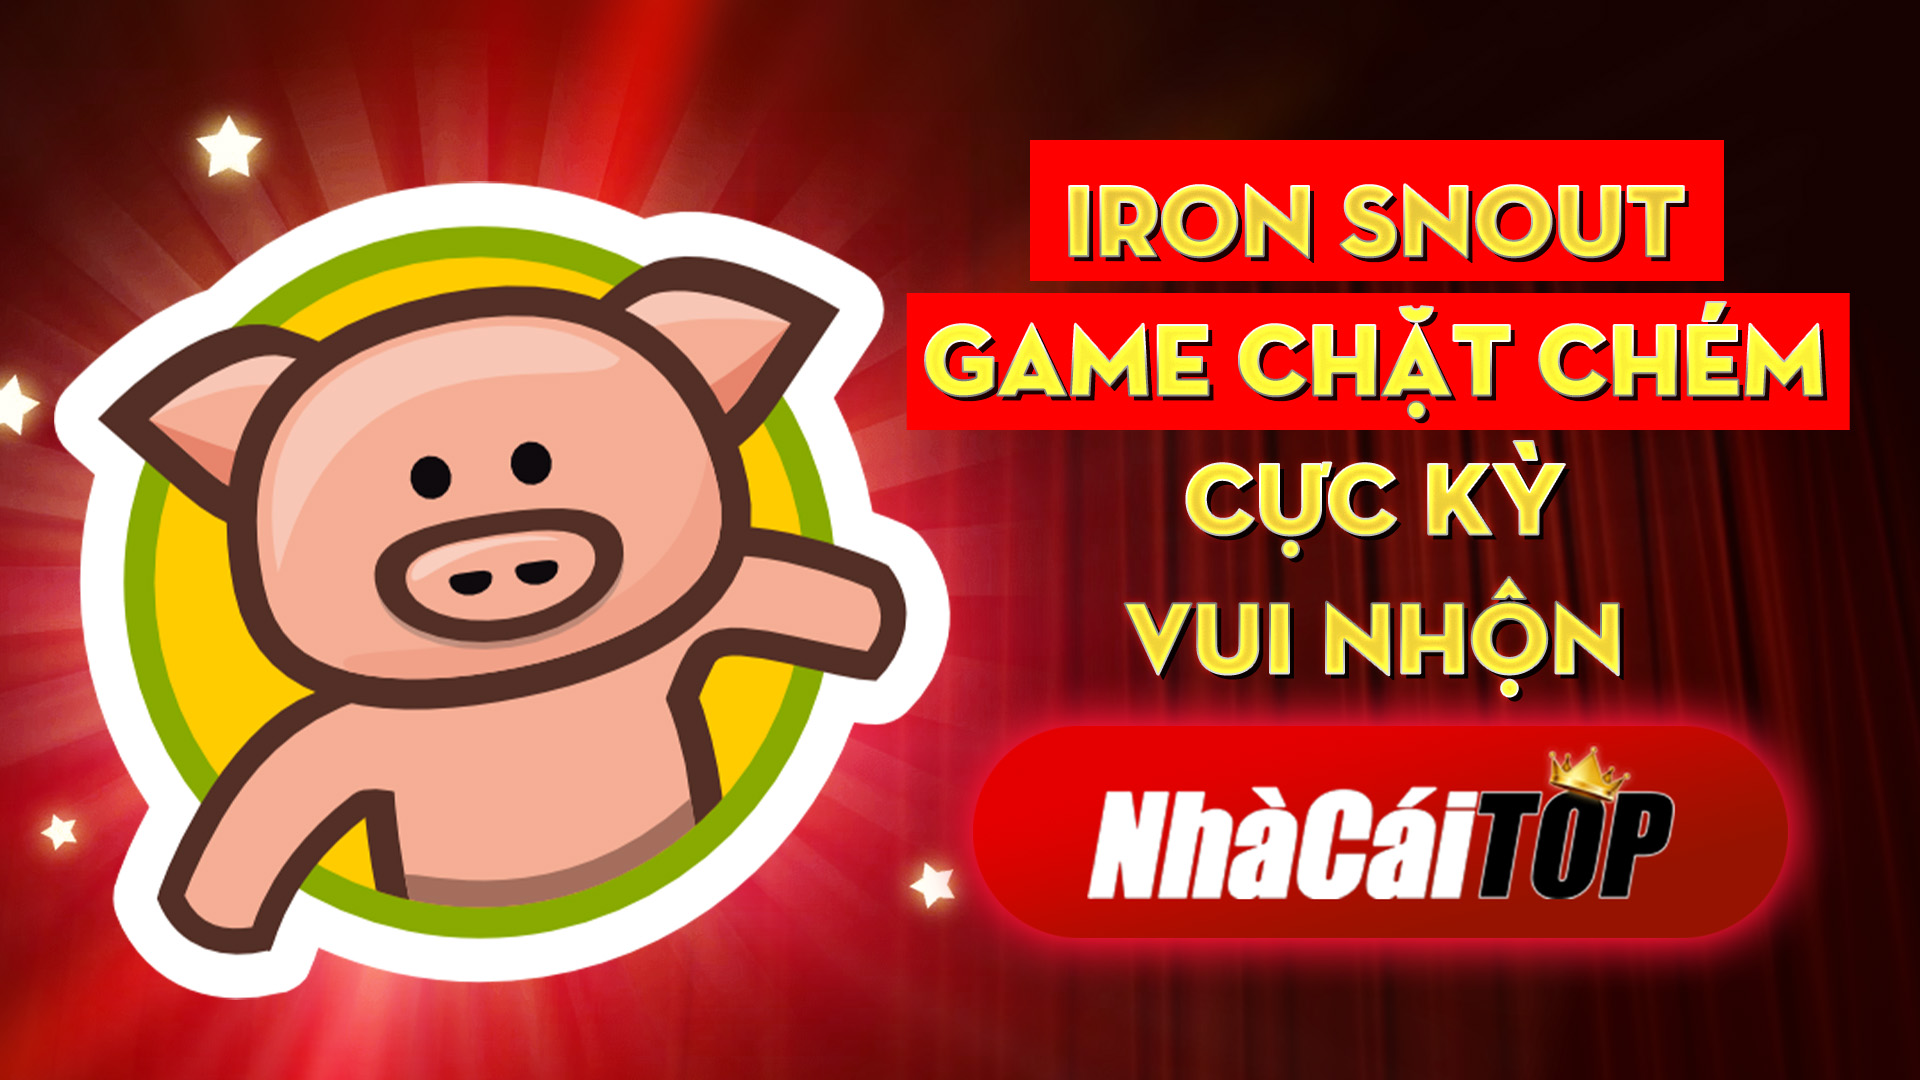 345 Iron Snout – Game Chat Chem Cuc Ky Vui Nhon